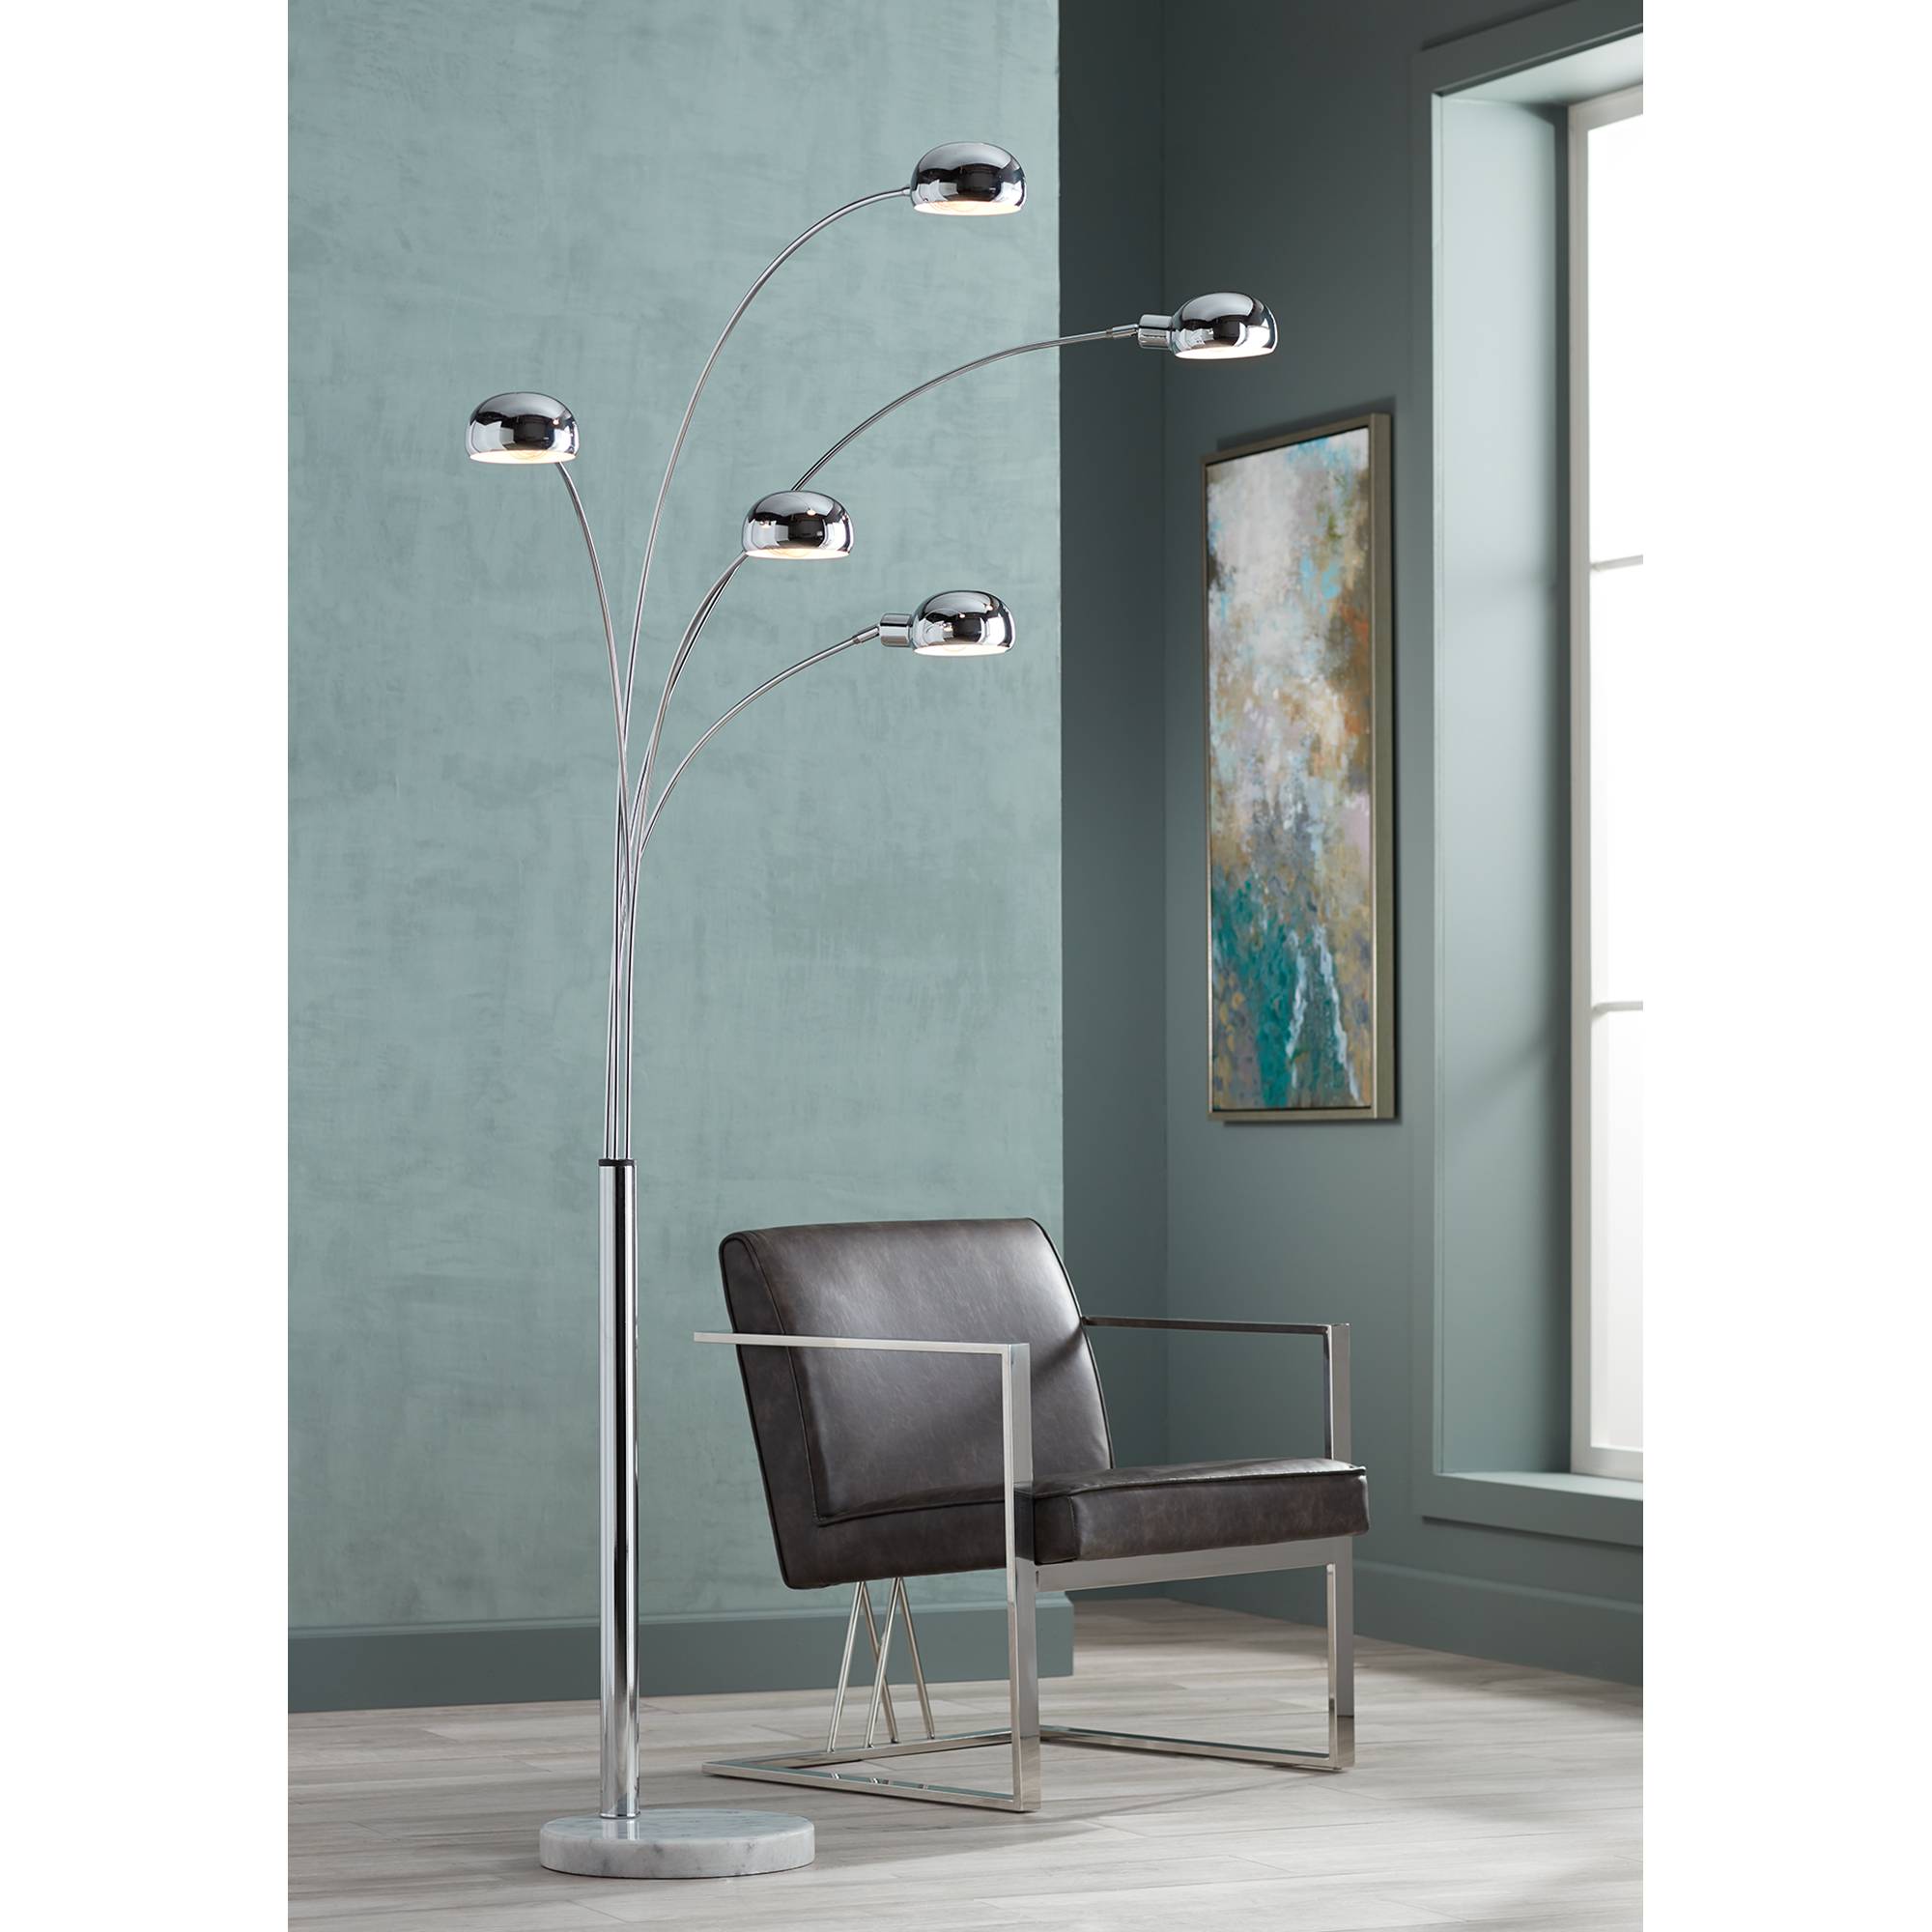 Mid Century Modern Arc Floor Lamp Chrome Marble Base For Living Room